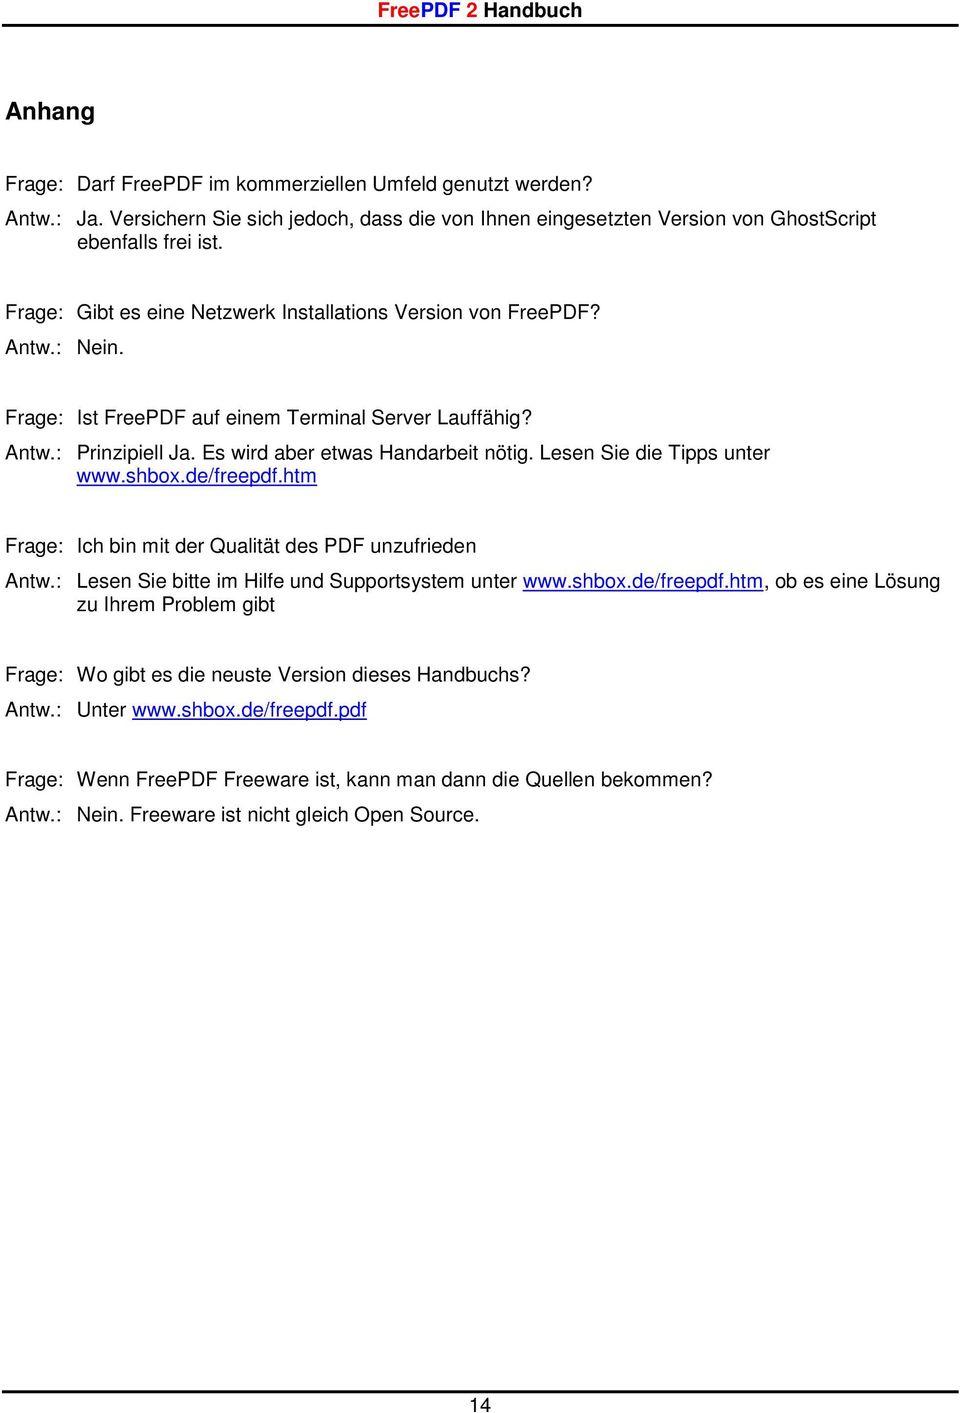 Lesen Sie die Tipps unter www.shbox.de/freepdf.htm Frage: Ich bin mit der Qualität des PDF unzufrieden Antw.: Lesen Sie bitte im Hilfe und Supportsystem unter www.shbox.de/freepdf.htm, ob es eine Lösung zu Ihrem Problem gibt Frage: Wo gibt es die neuste Version dieses Handbuchs?